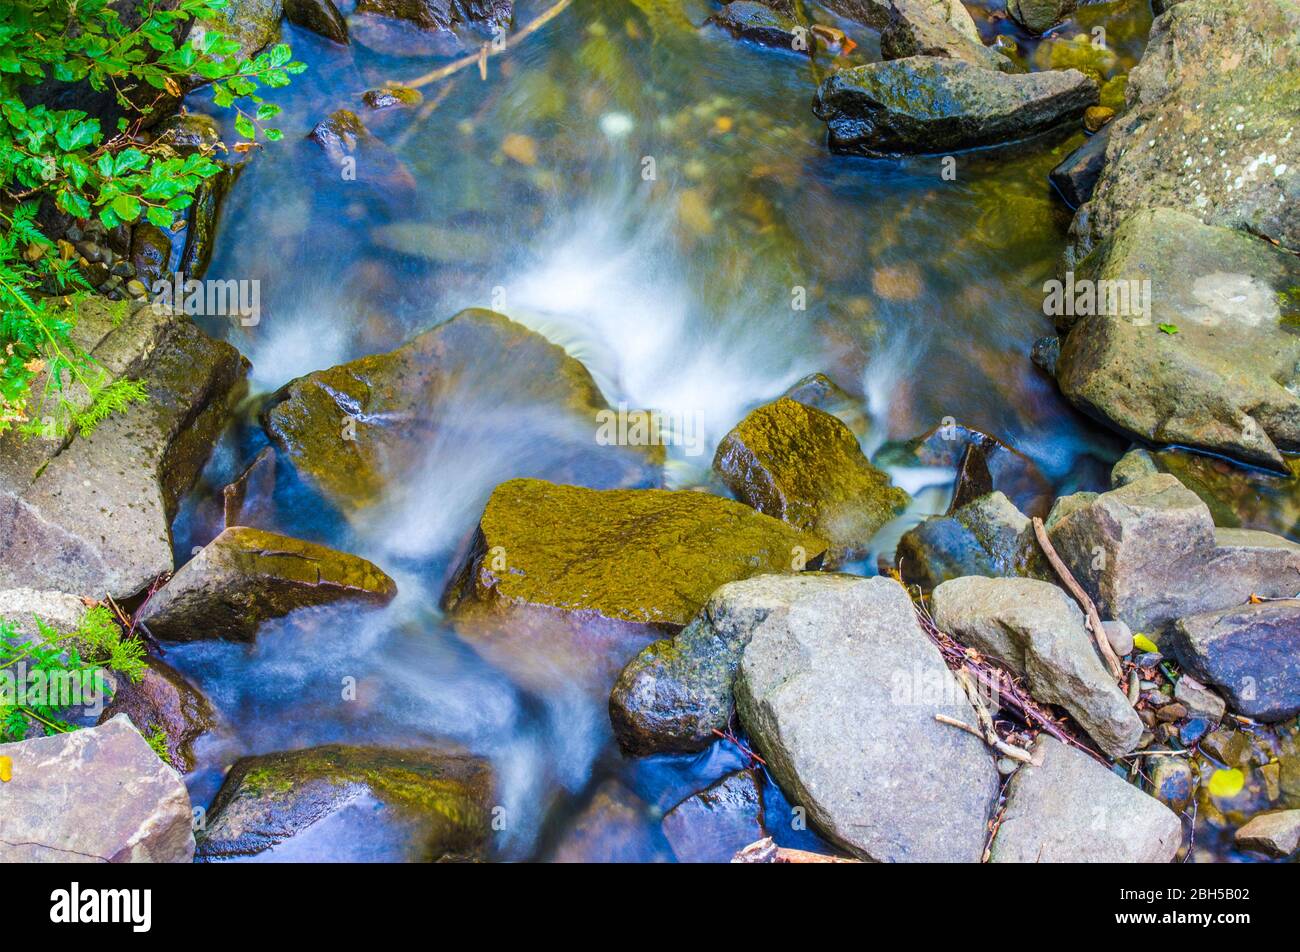 cascata del torrente di montagna con acqua pura e limpida che corre velocemente a valle nella foresta lussureggiante, verde e ombreggiata Foto Stock